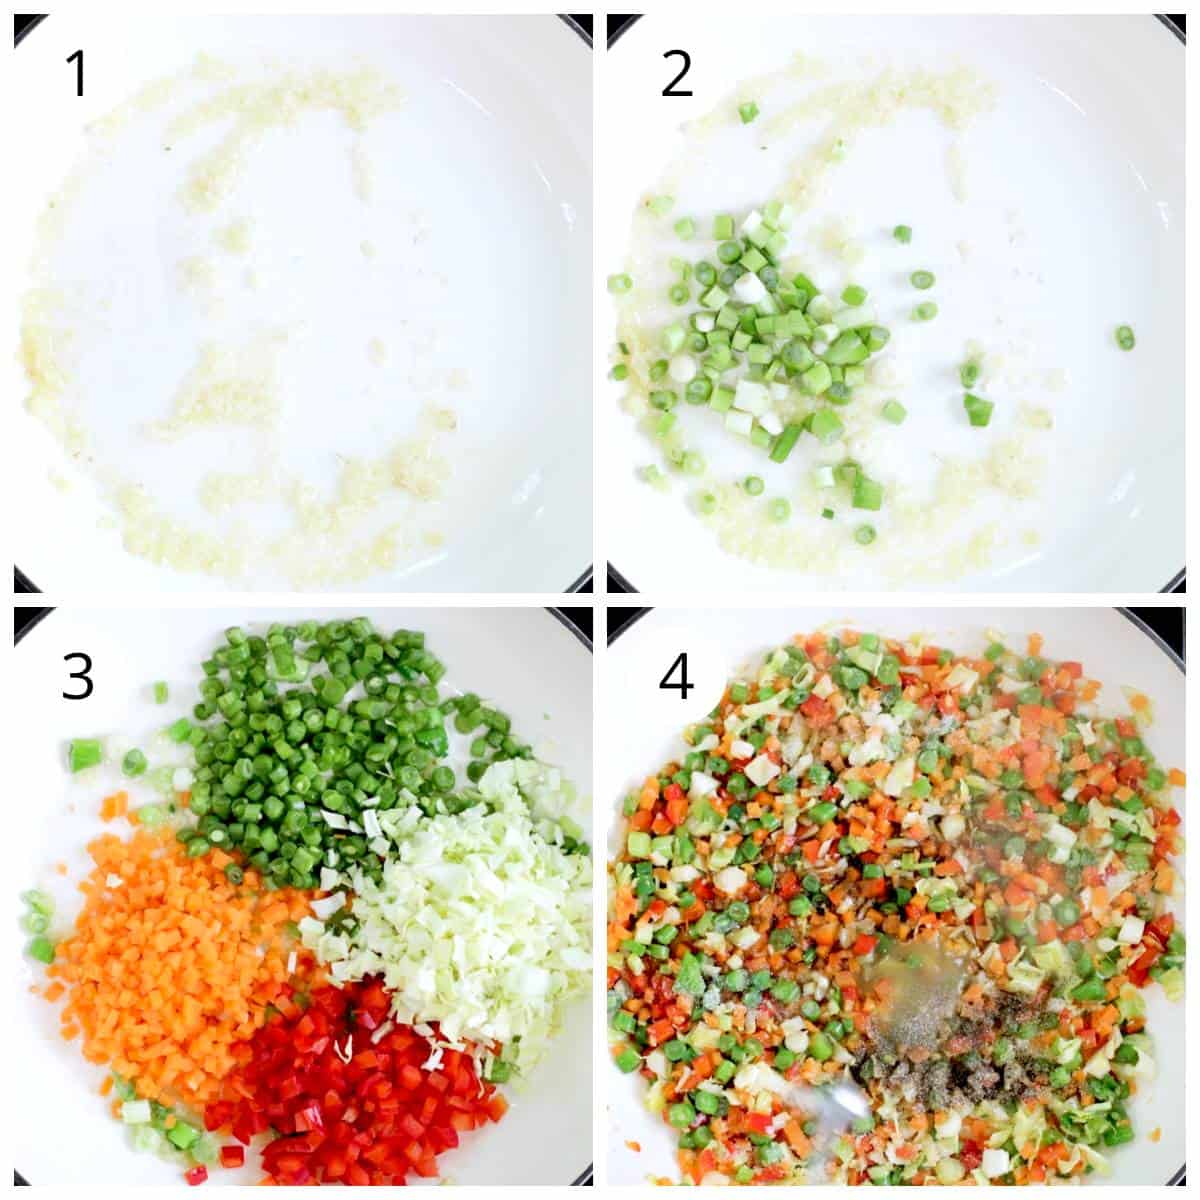 Steps for sautéing veggies for veg fried rice